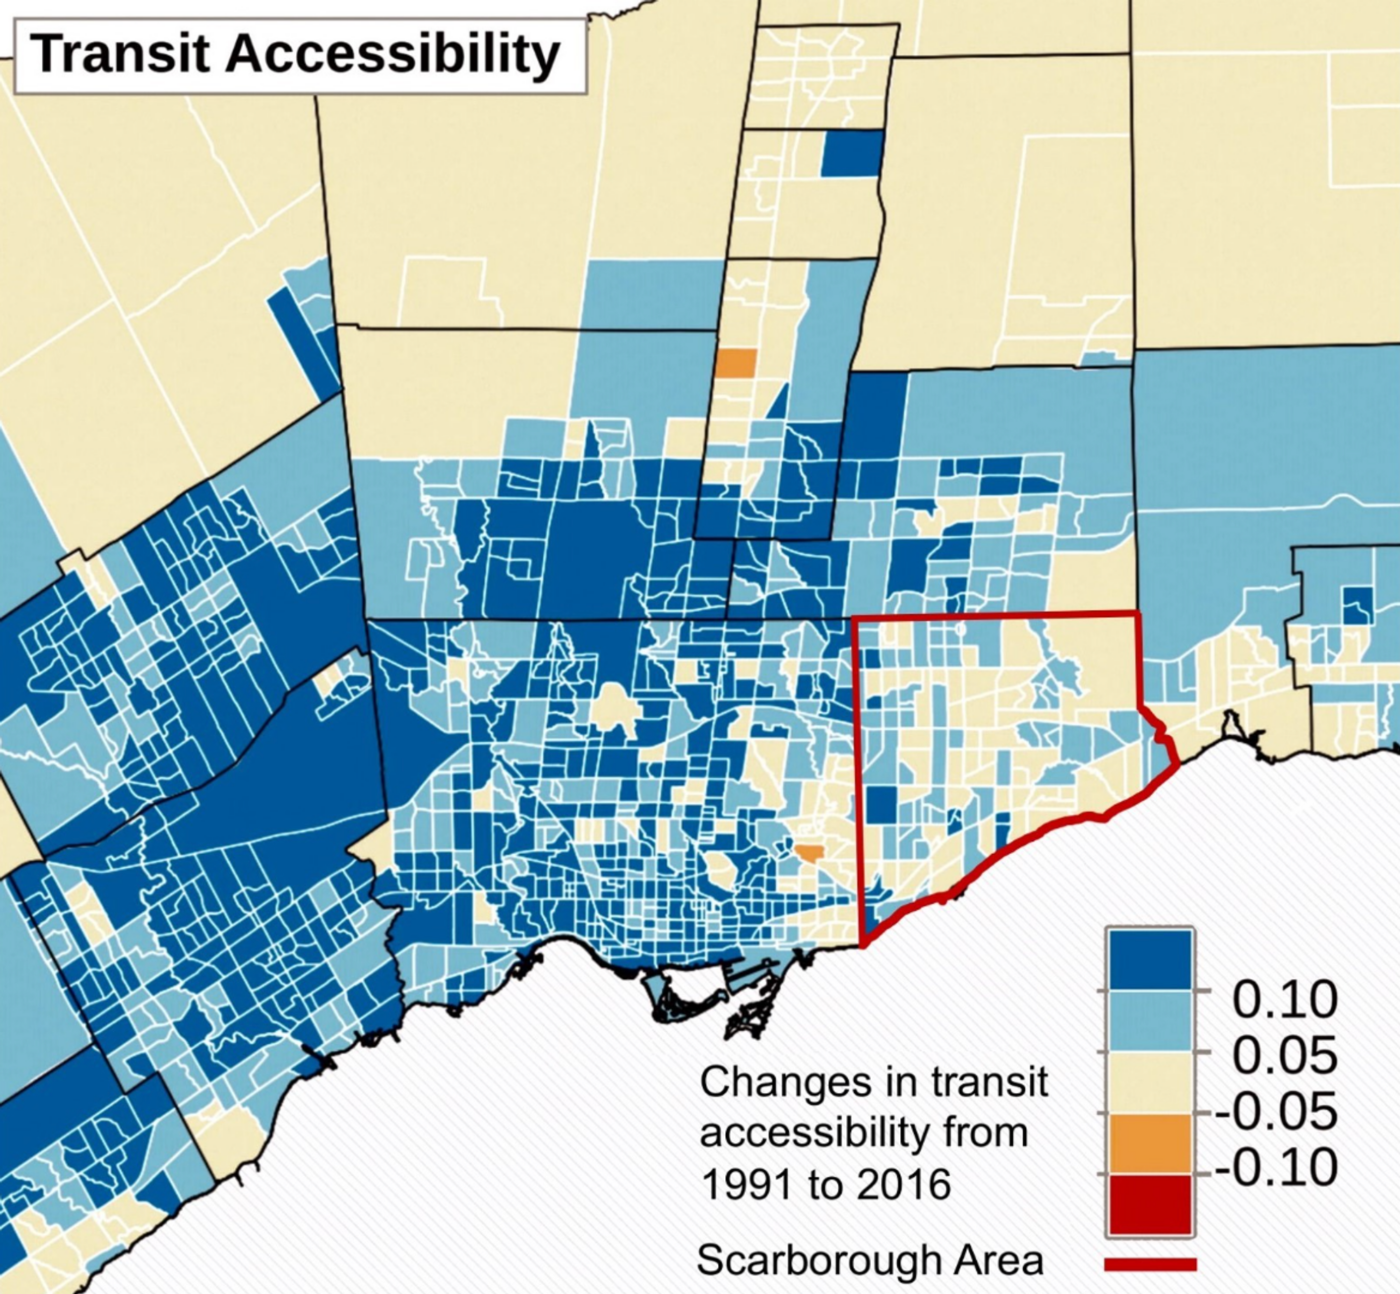 Scarborough transit access heat map from Ignacio